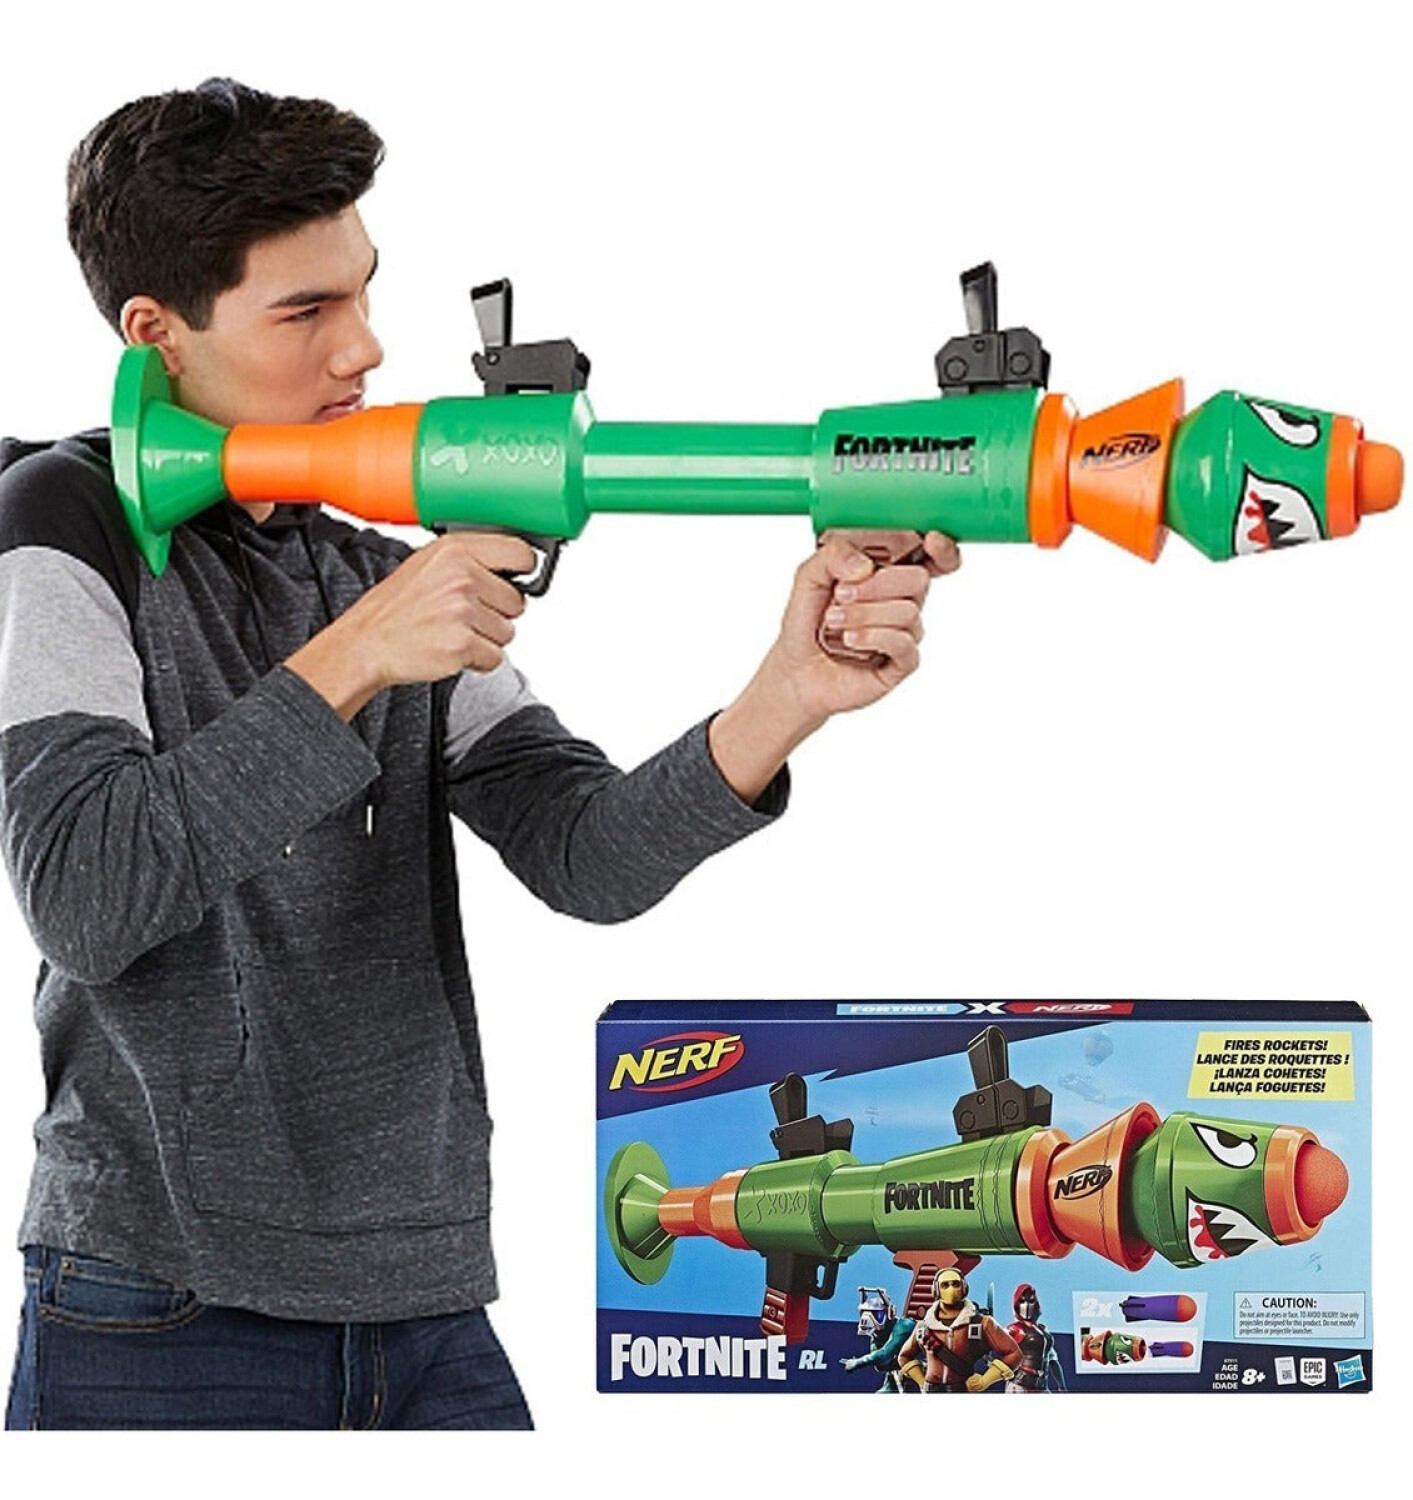 Este enorme lanzacohetes es en realidad un arma Nerf inspirada en un  popular videojuego